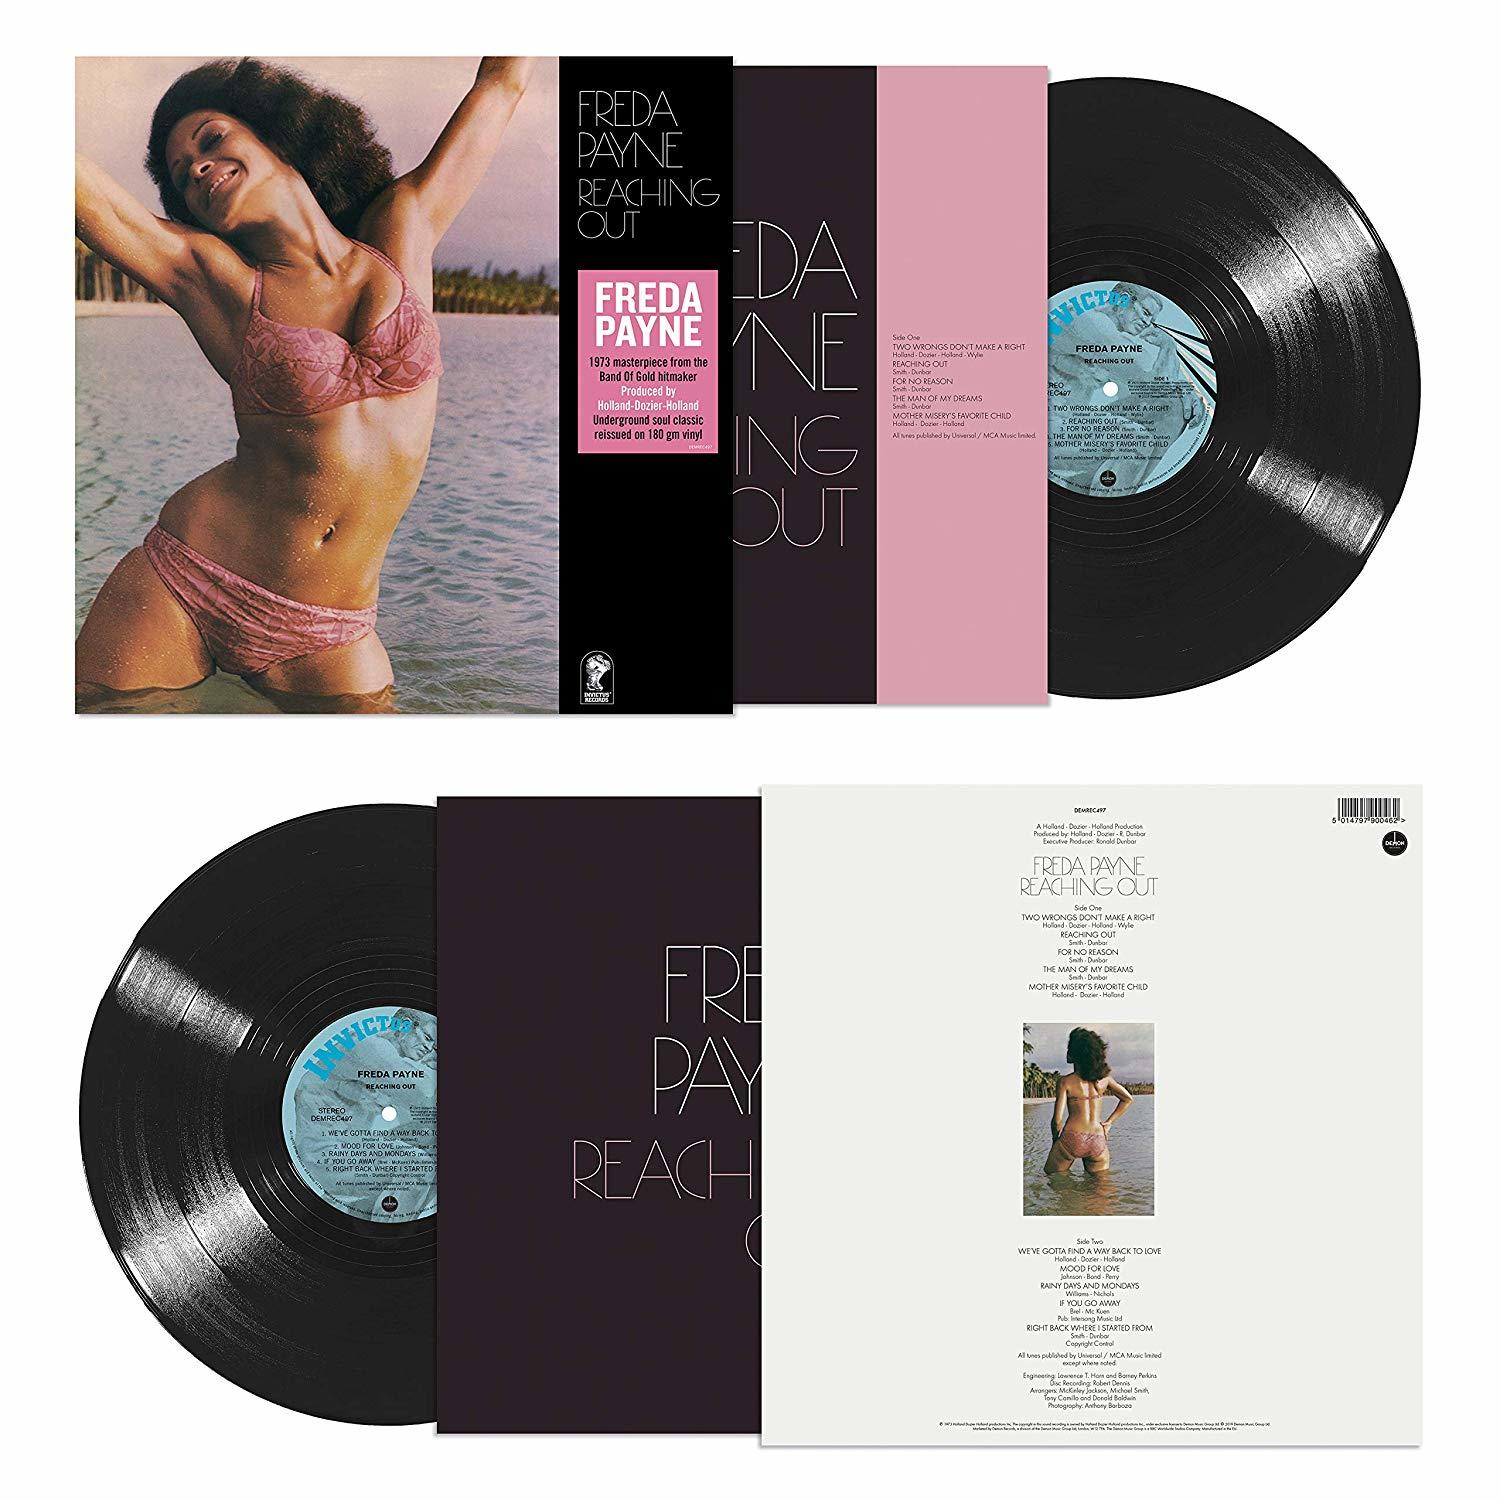 Freda Payne - Reaching out (Vinyl) 